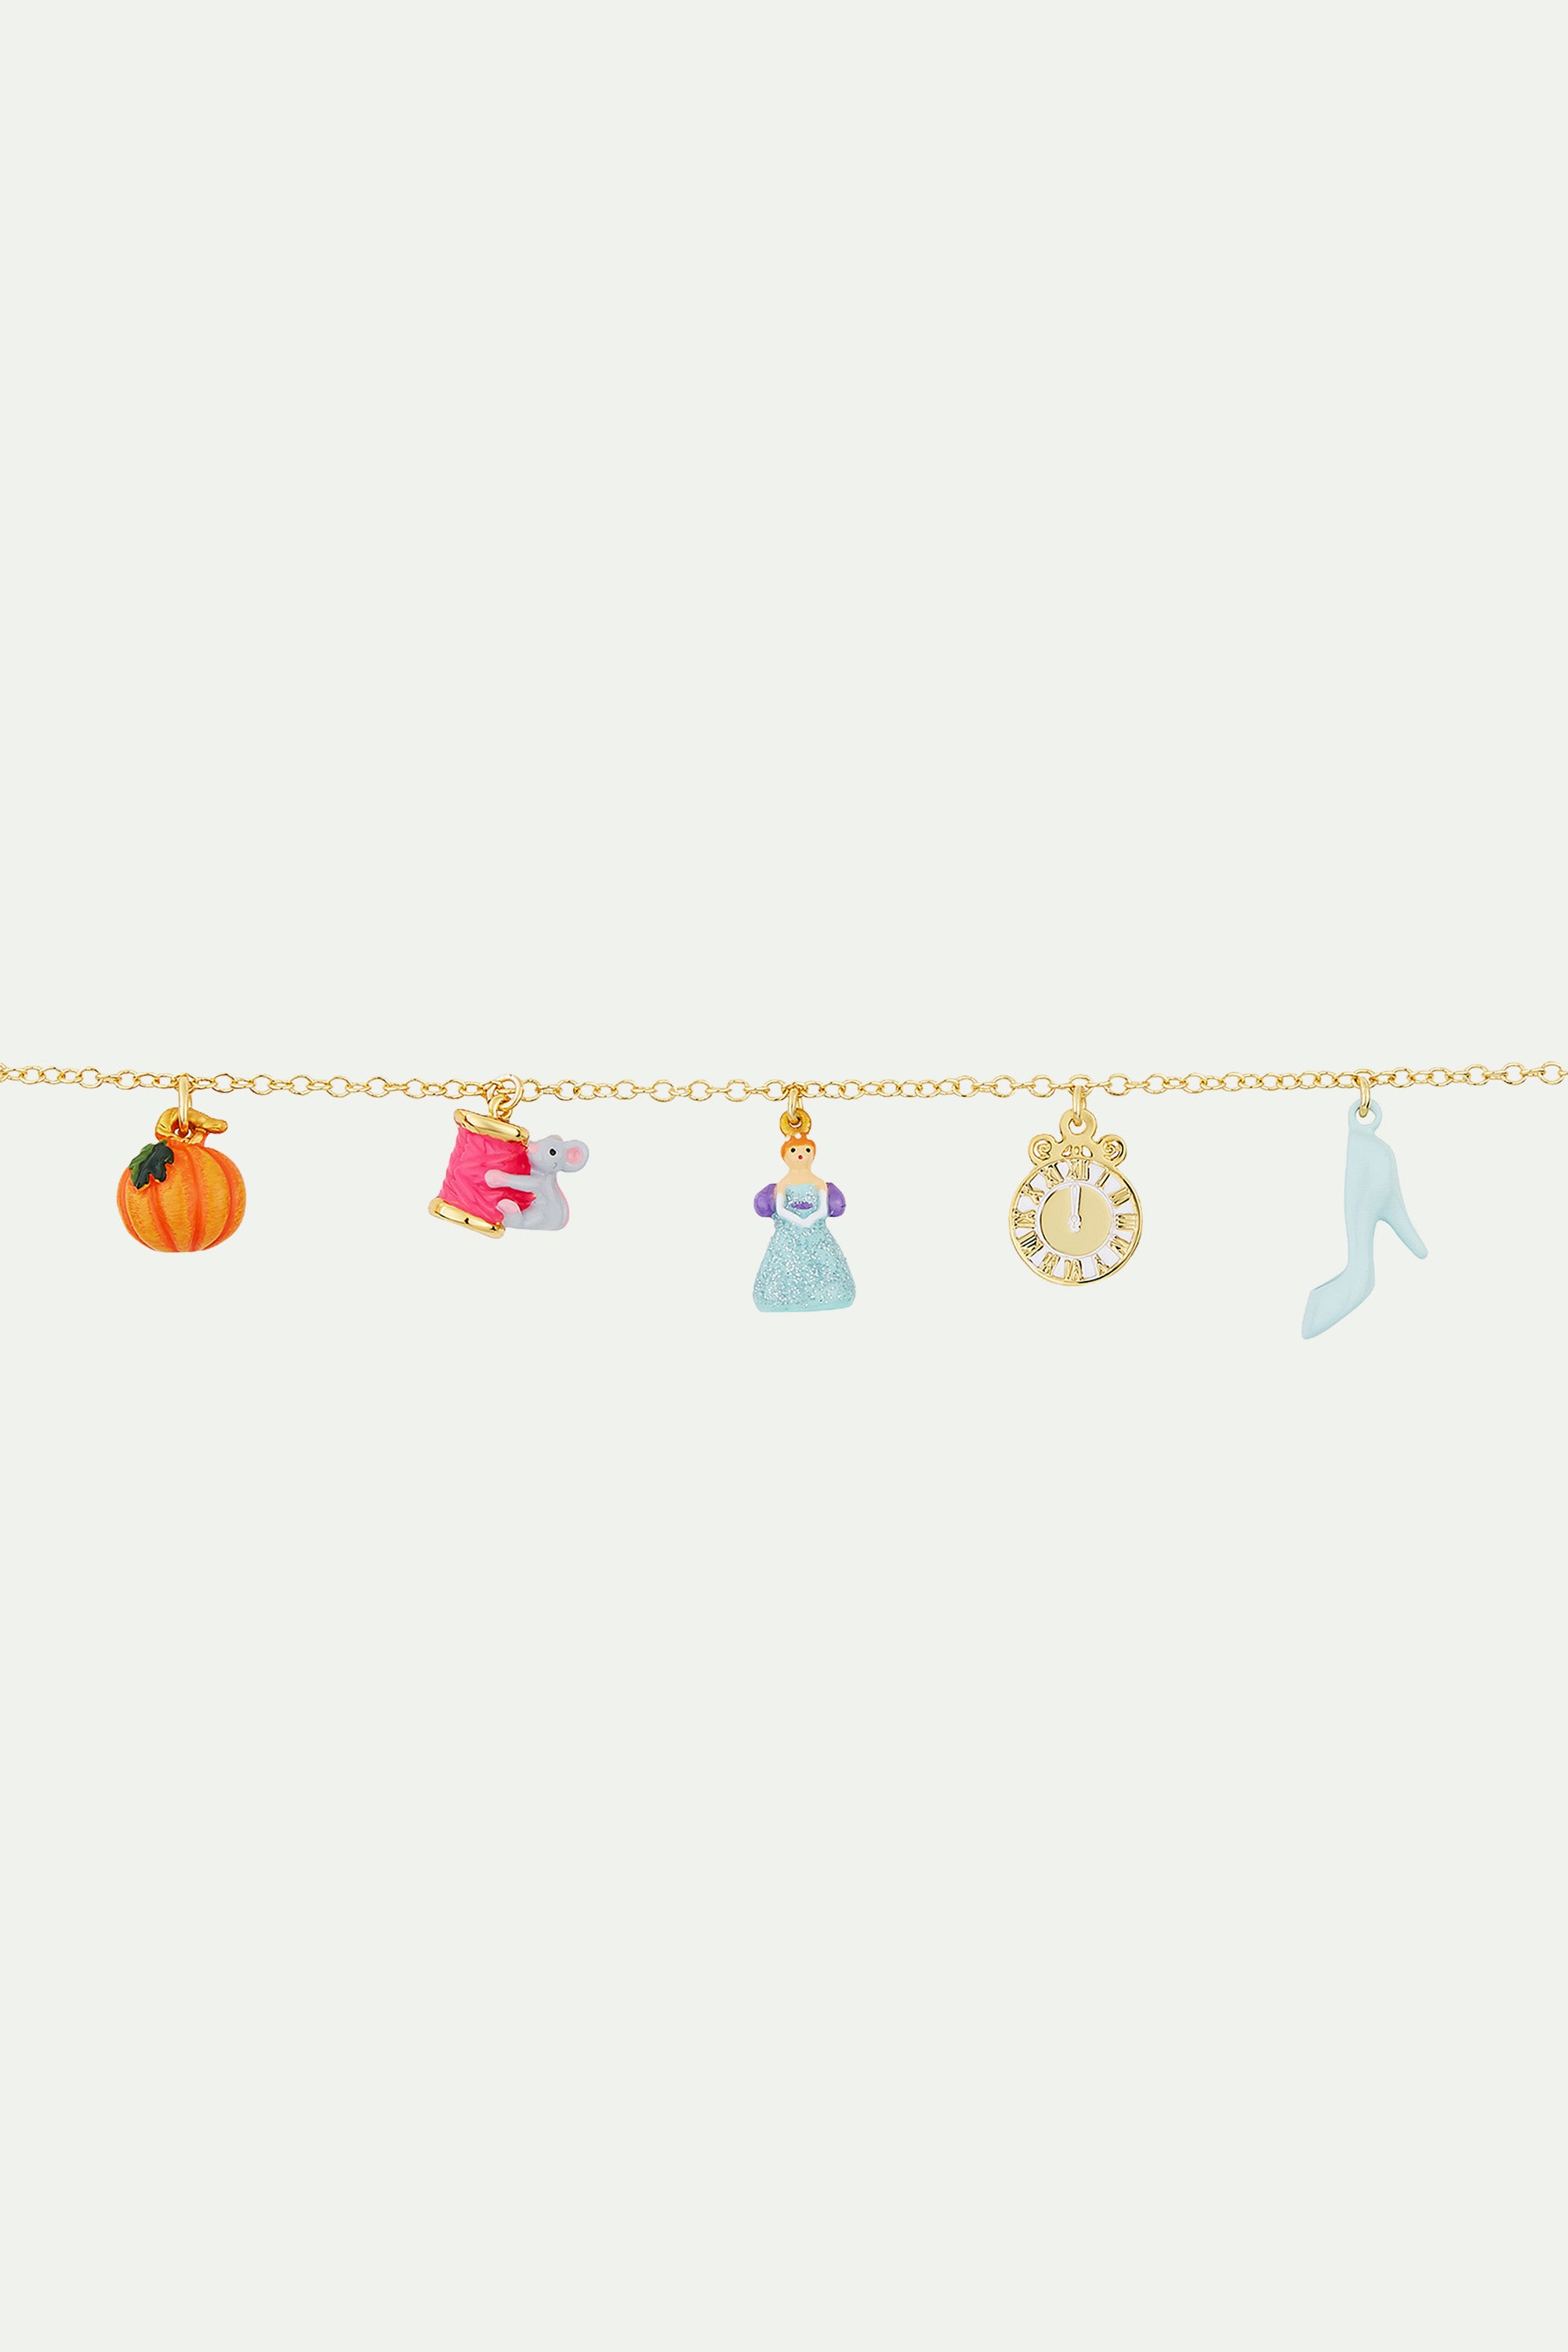 Bracelet charm's citrouille, bobine de fil et souris, cendrillon, horloge et soulier